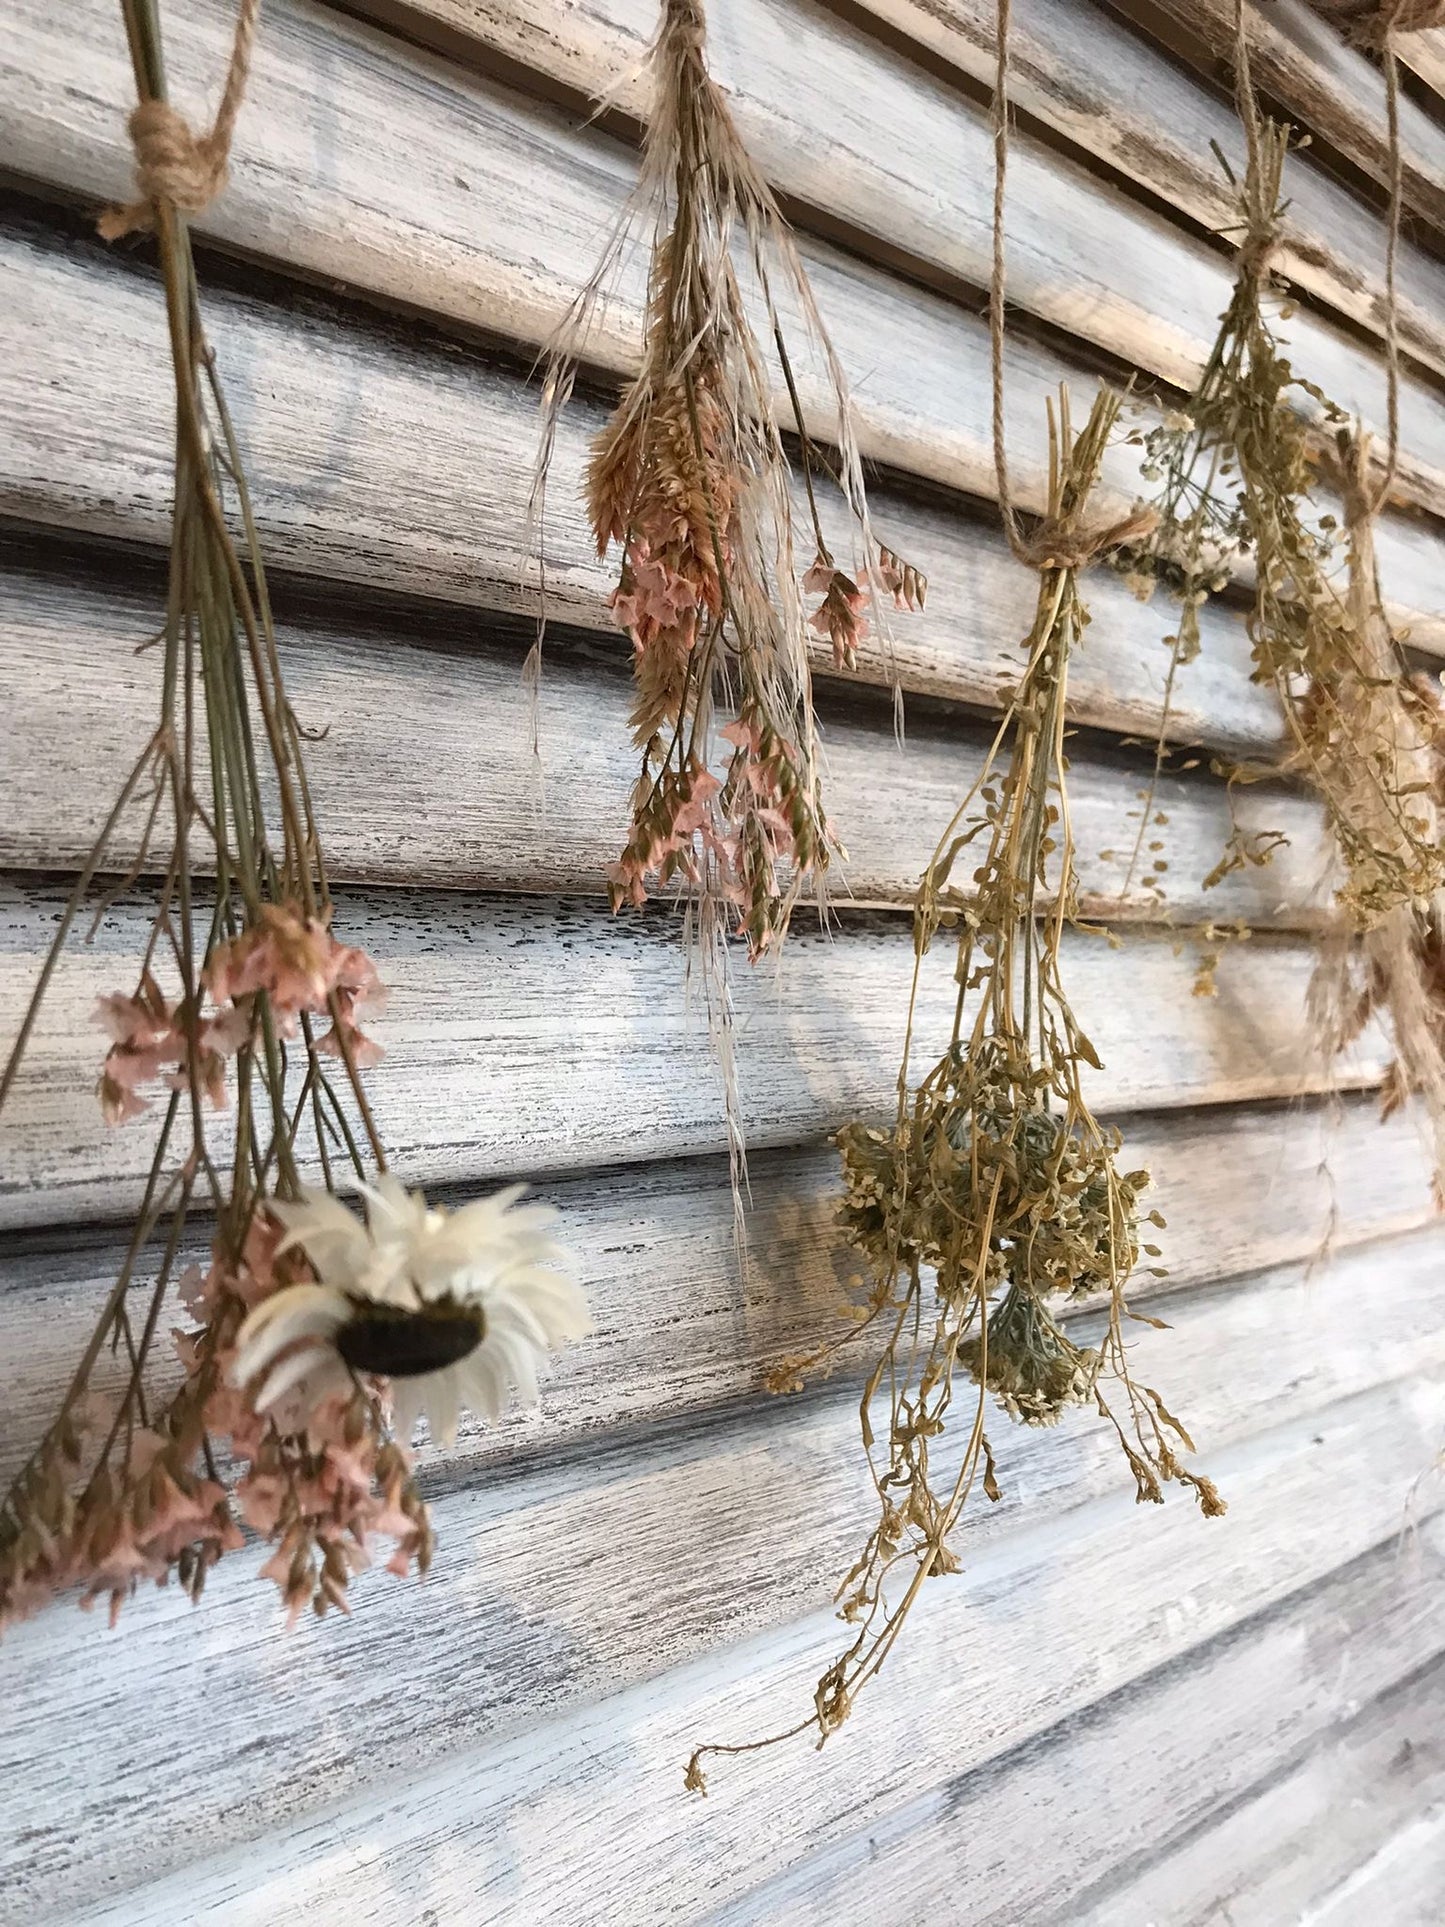 Dried Flower Hanger